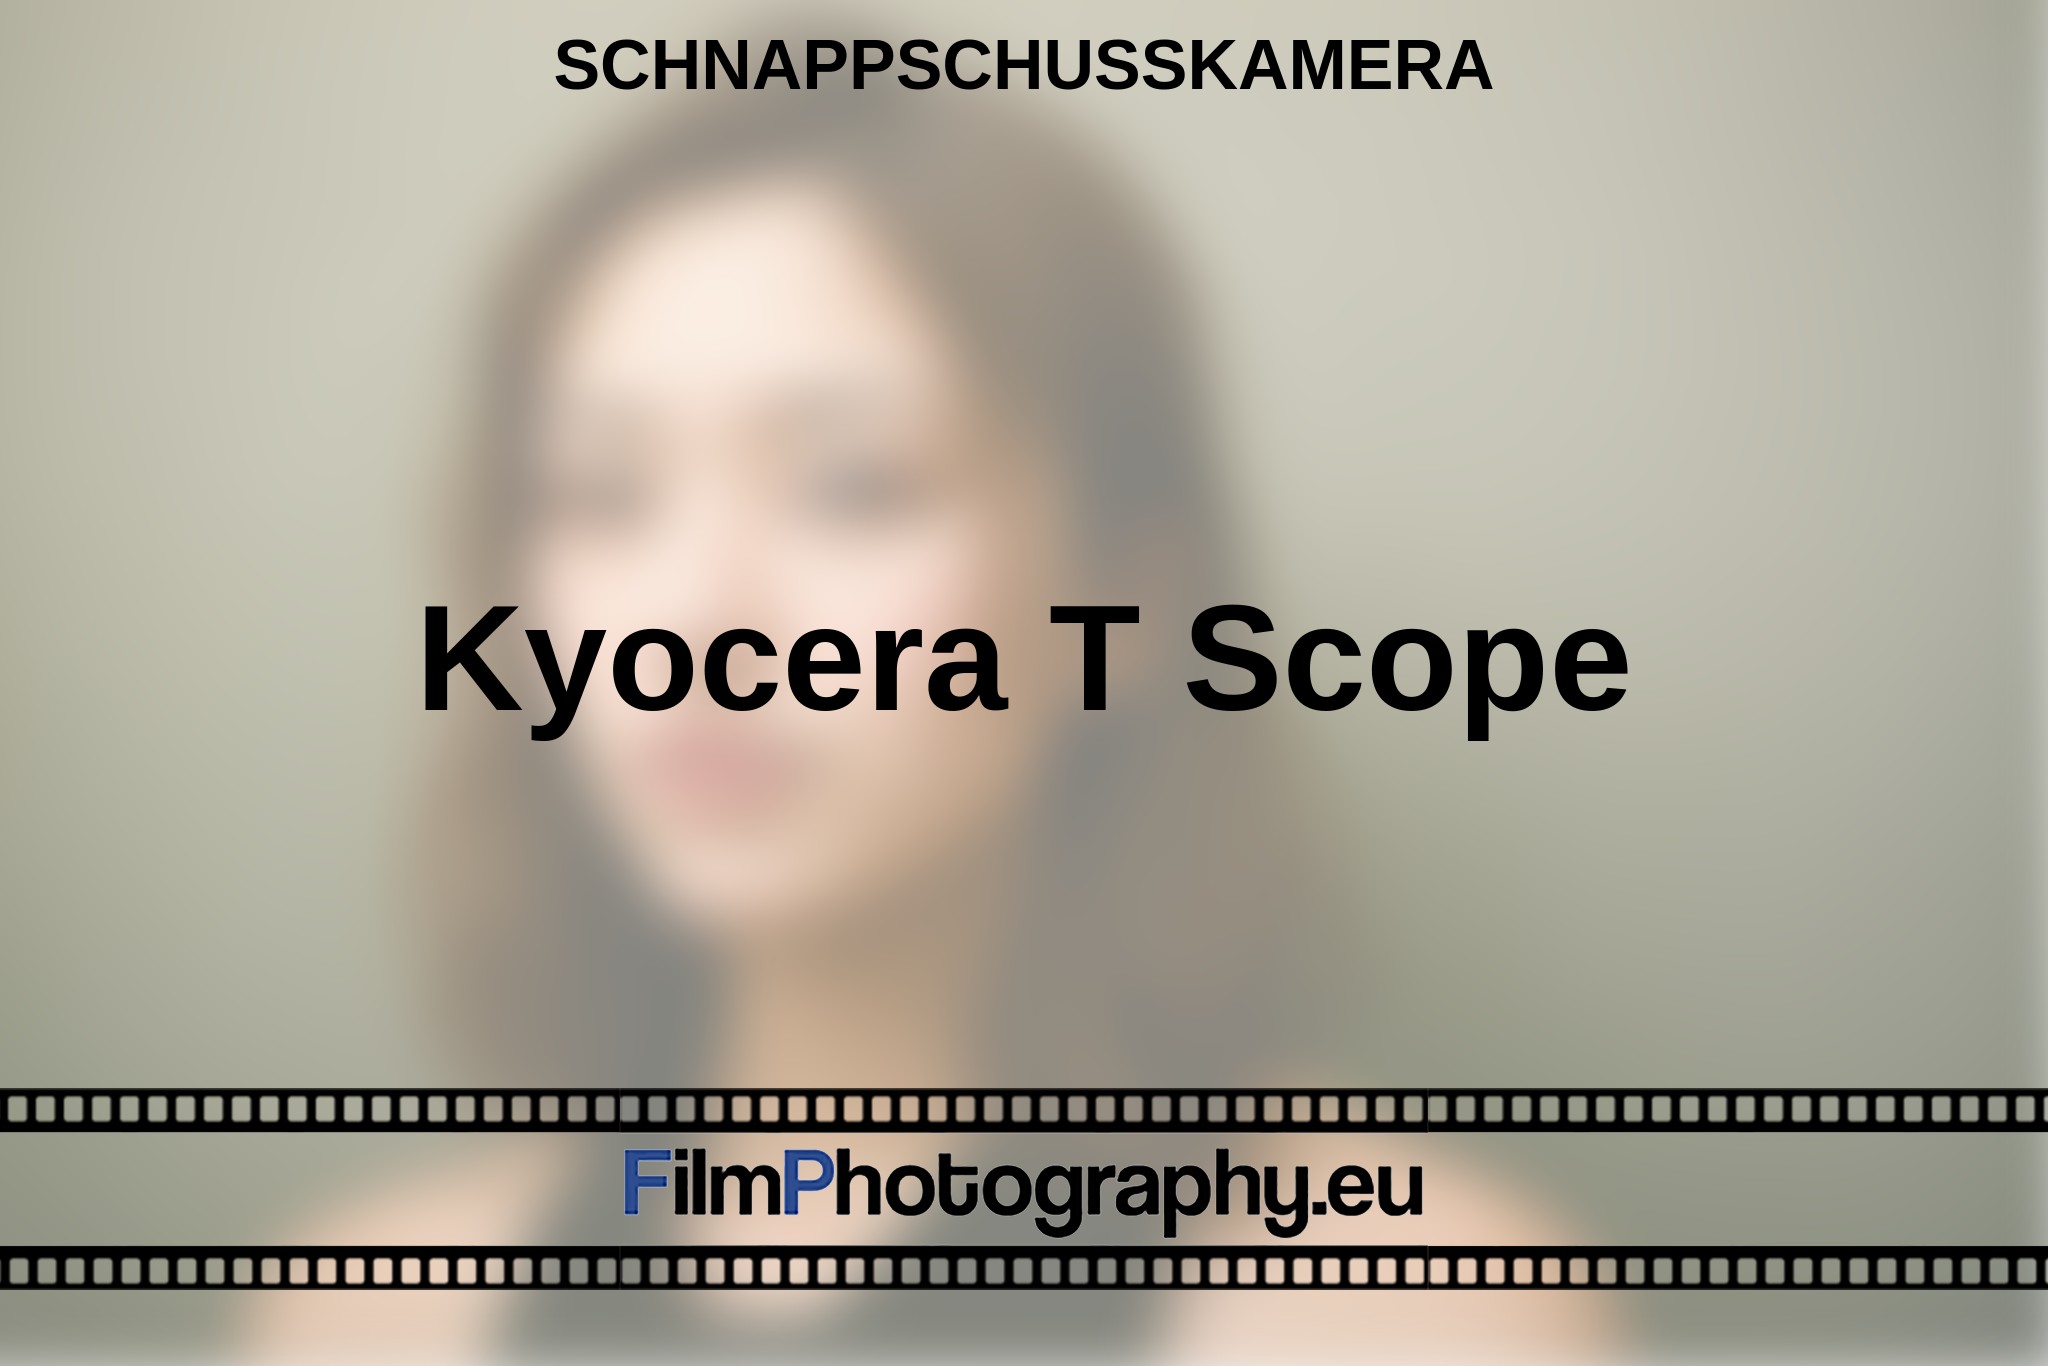 kyocera-t-scope-schnappschusskamera-bnv.jpg